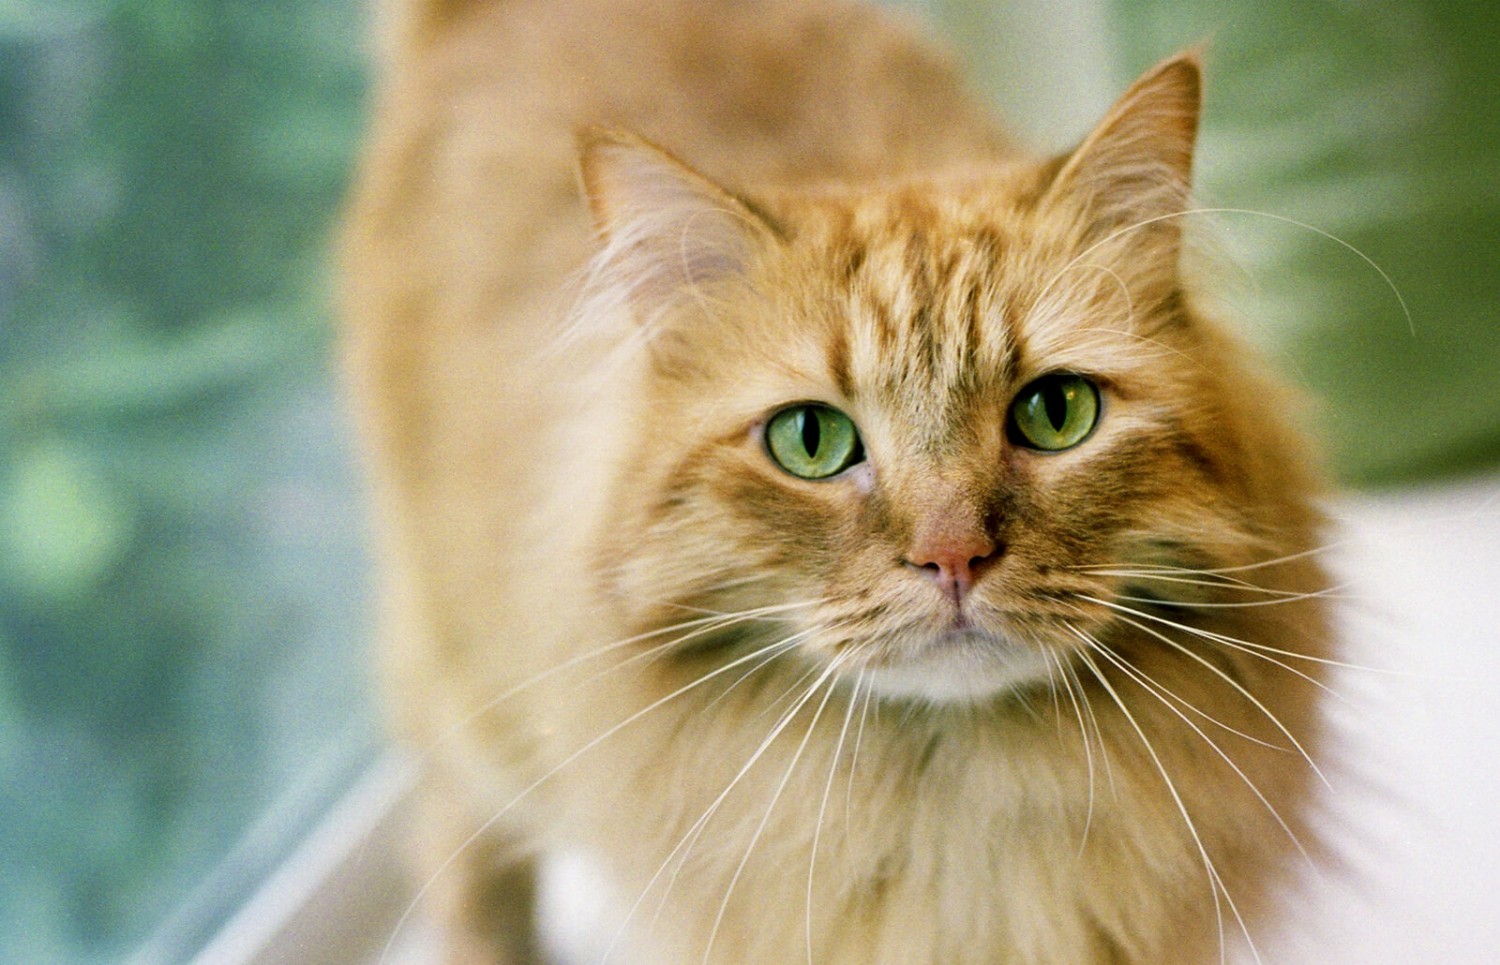 ginger orange tabby cat male